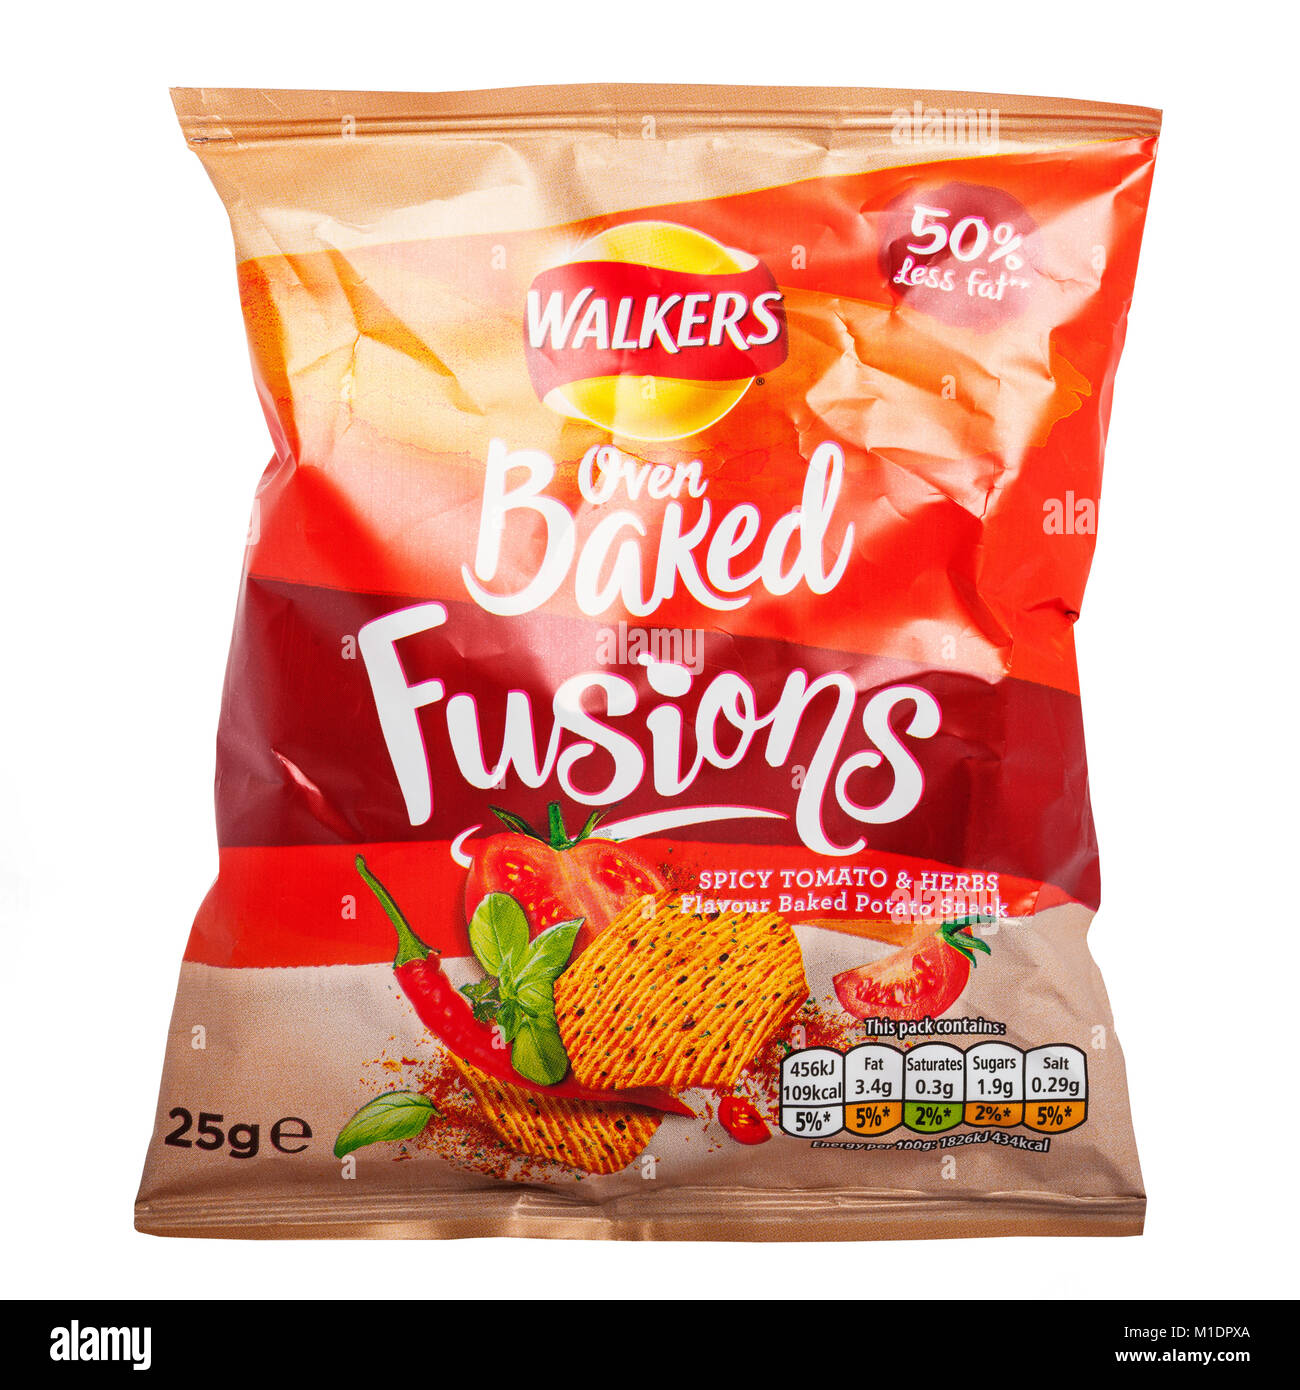 Ein Paket von Wanderern ofen Gebacken würzigen Tomaten & Kräuter Aroma Fusionen Chips mit 50% weniger Fett auf weißem Hintergrund Stockfoto